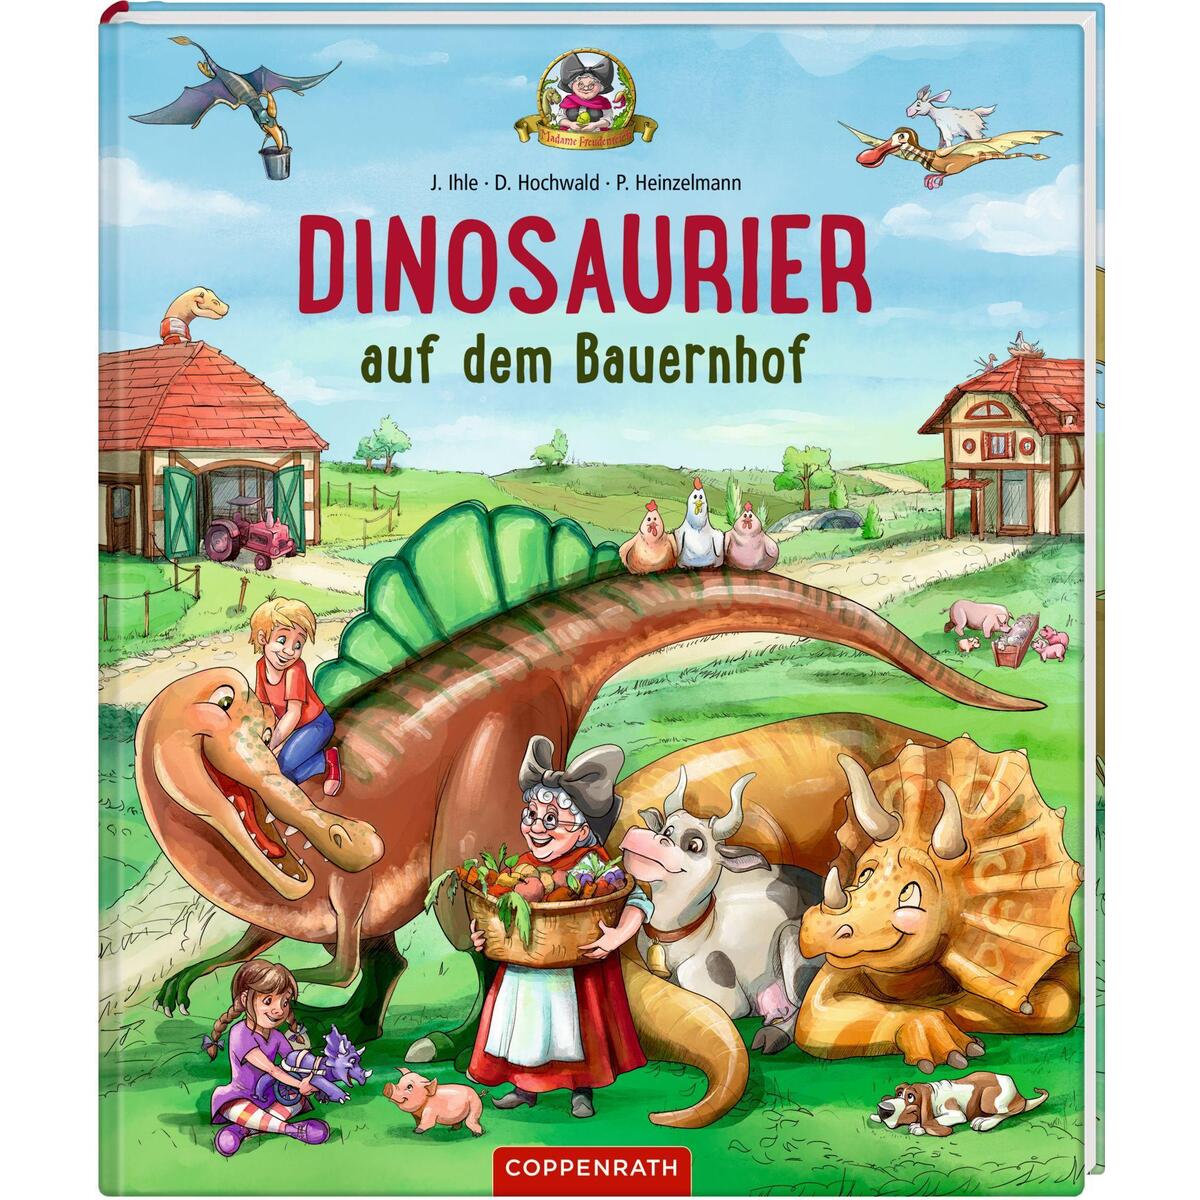 Dinosaurier auf dem Bauernhof (Bd. 4) von Coppenrath F